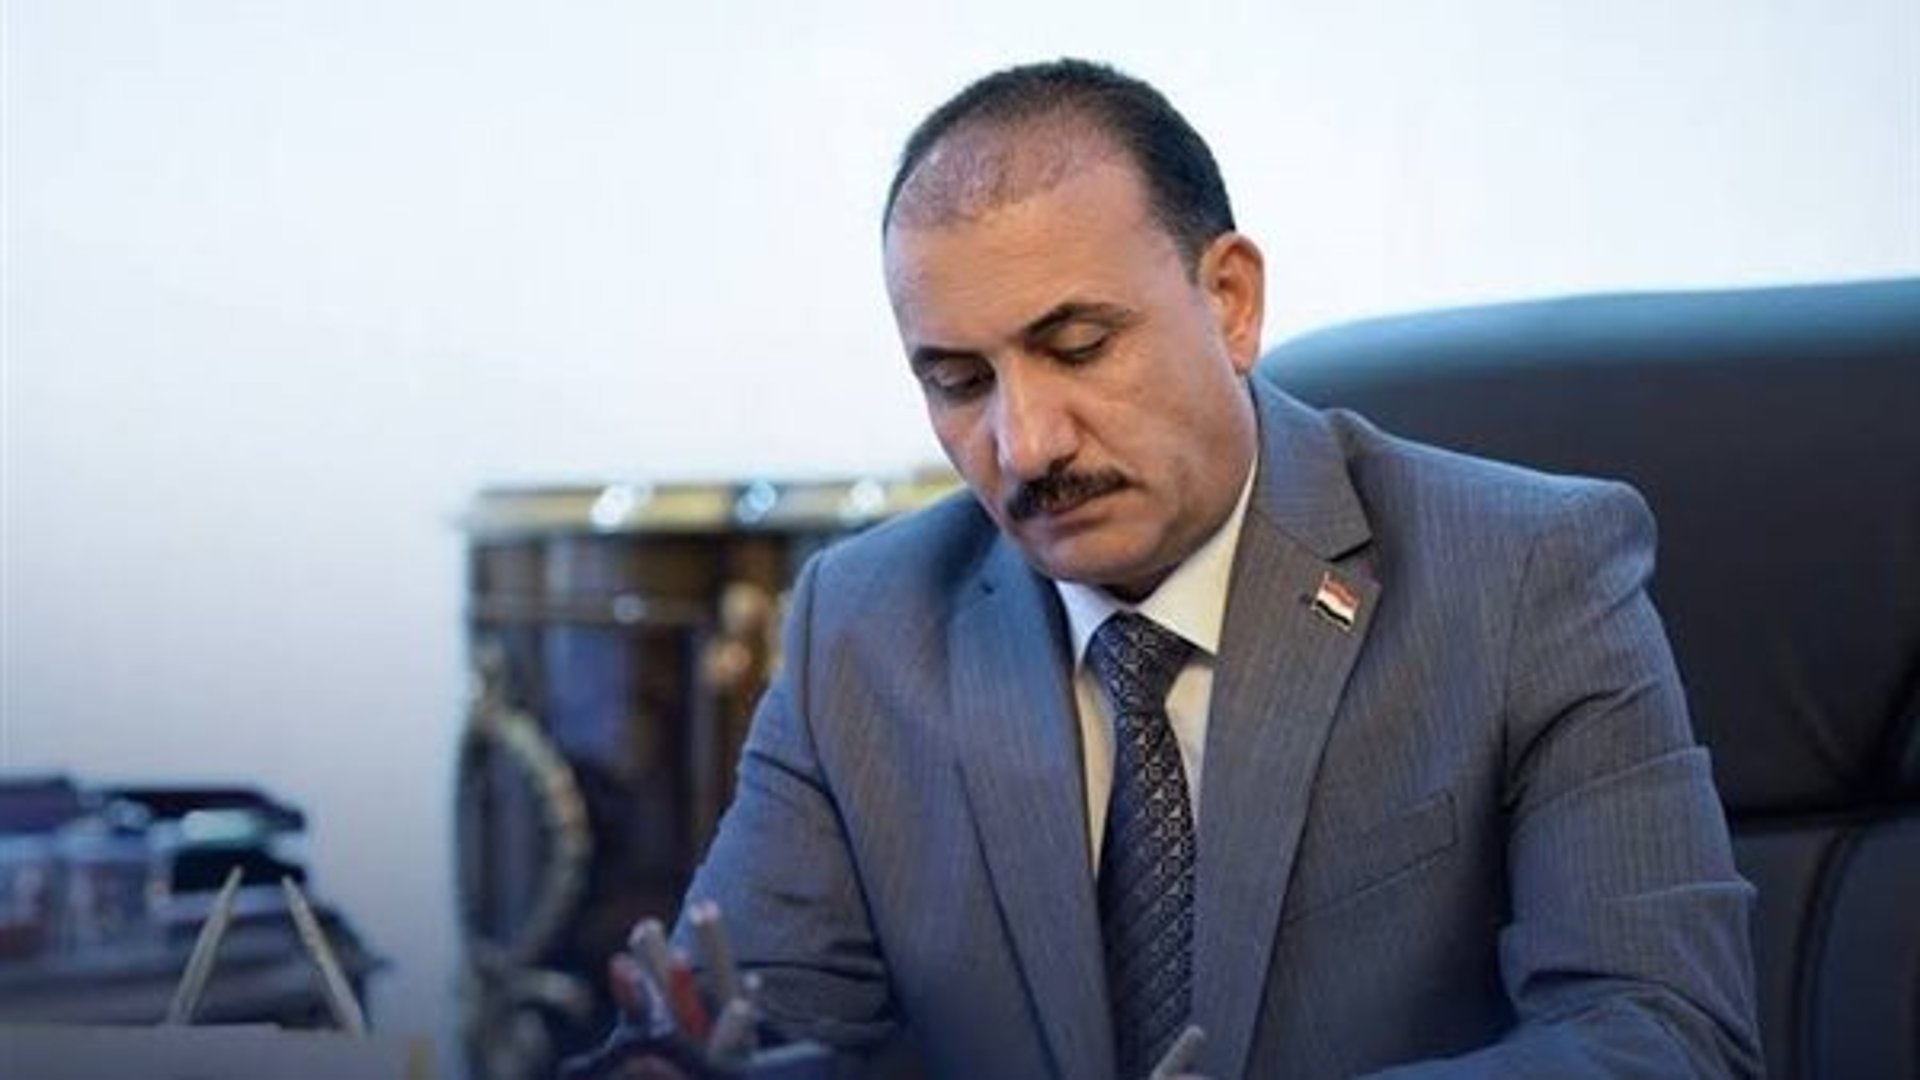 وزير التربية يصادق على تعيين أكثر من 700 محاضر في مدارس بغداد